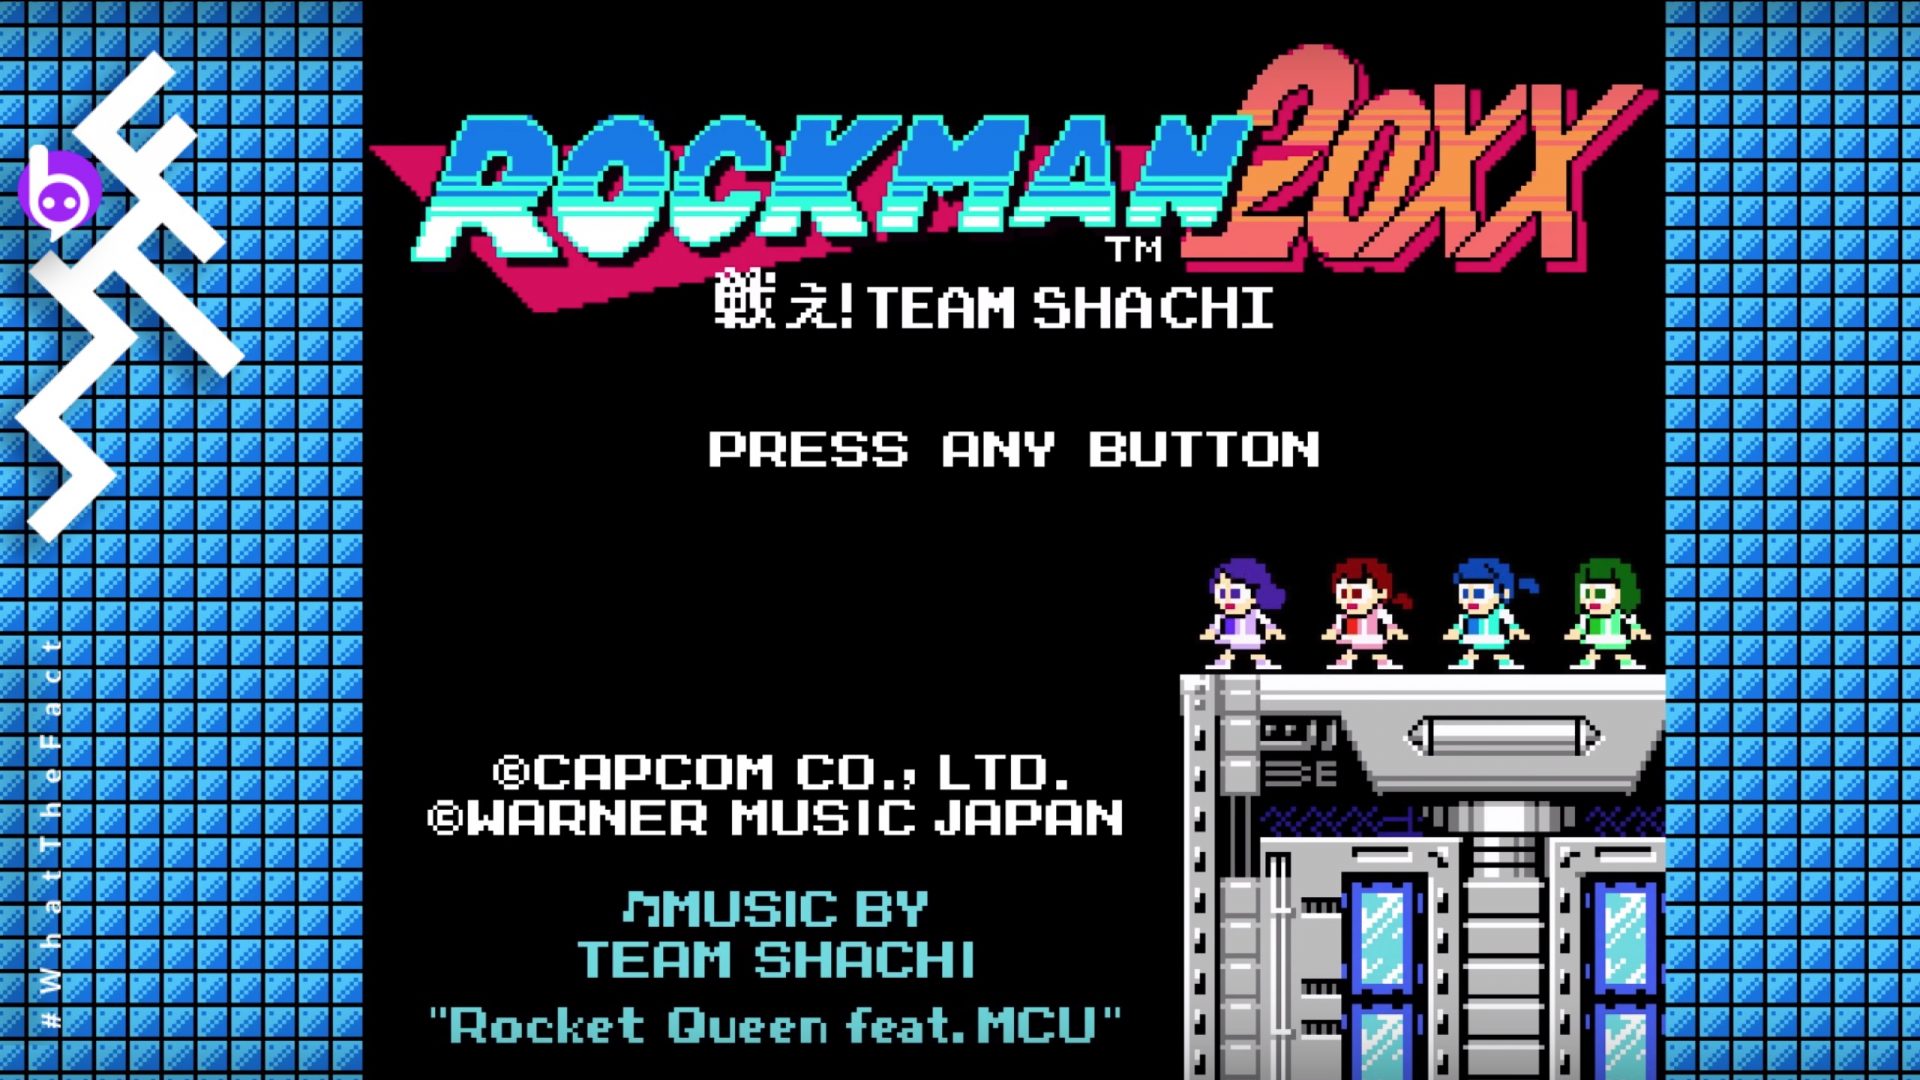 เมื่อไอดอลมารวมกับ Rockman เจ๋งทั้ง MV และมีเกมให้เล่นด้วย! พบ “Rocket Queen feat. MCU”